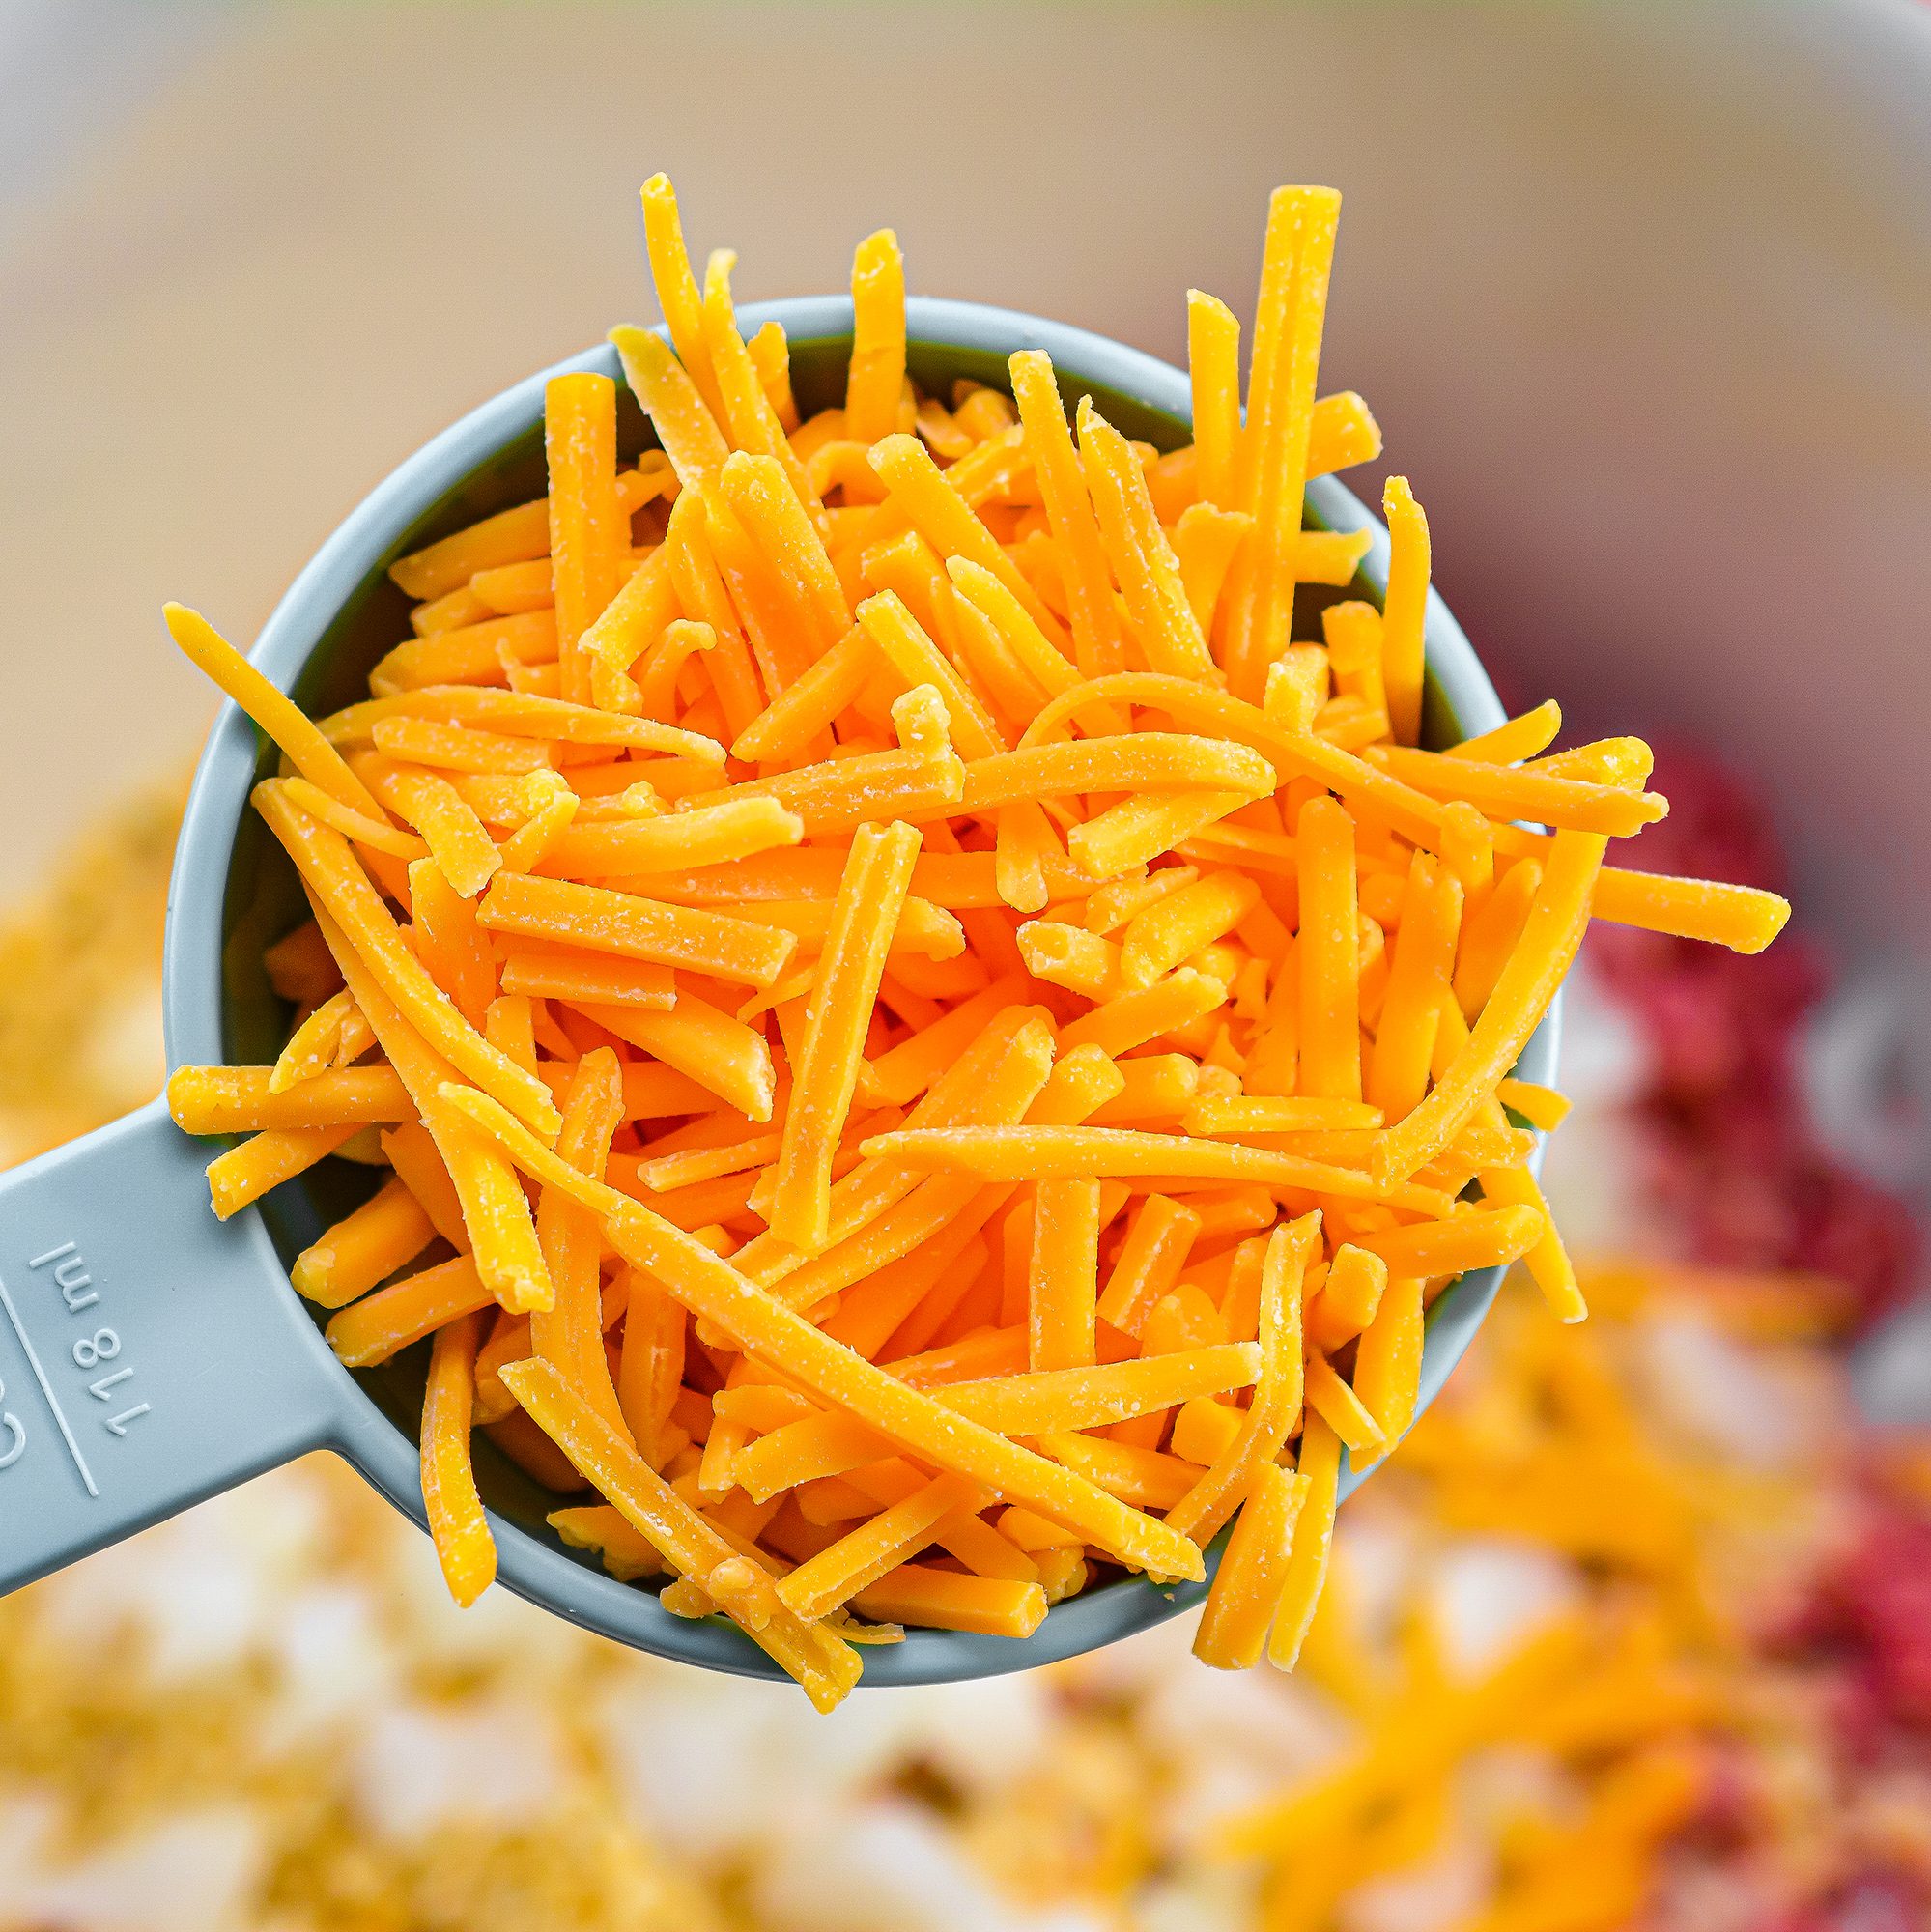 add ½ cup of shredded cheddar cheese.